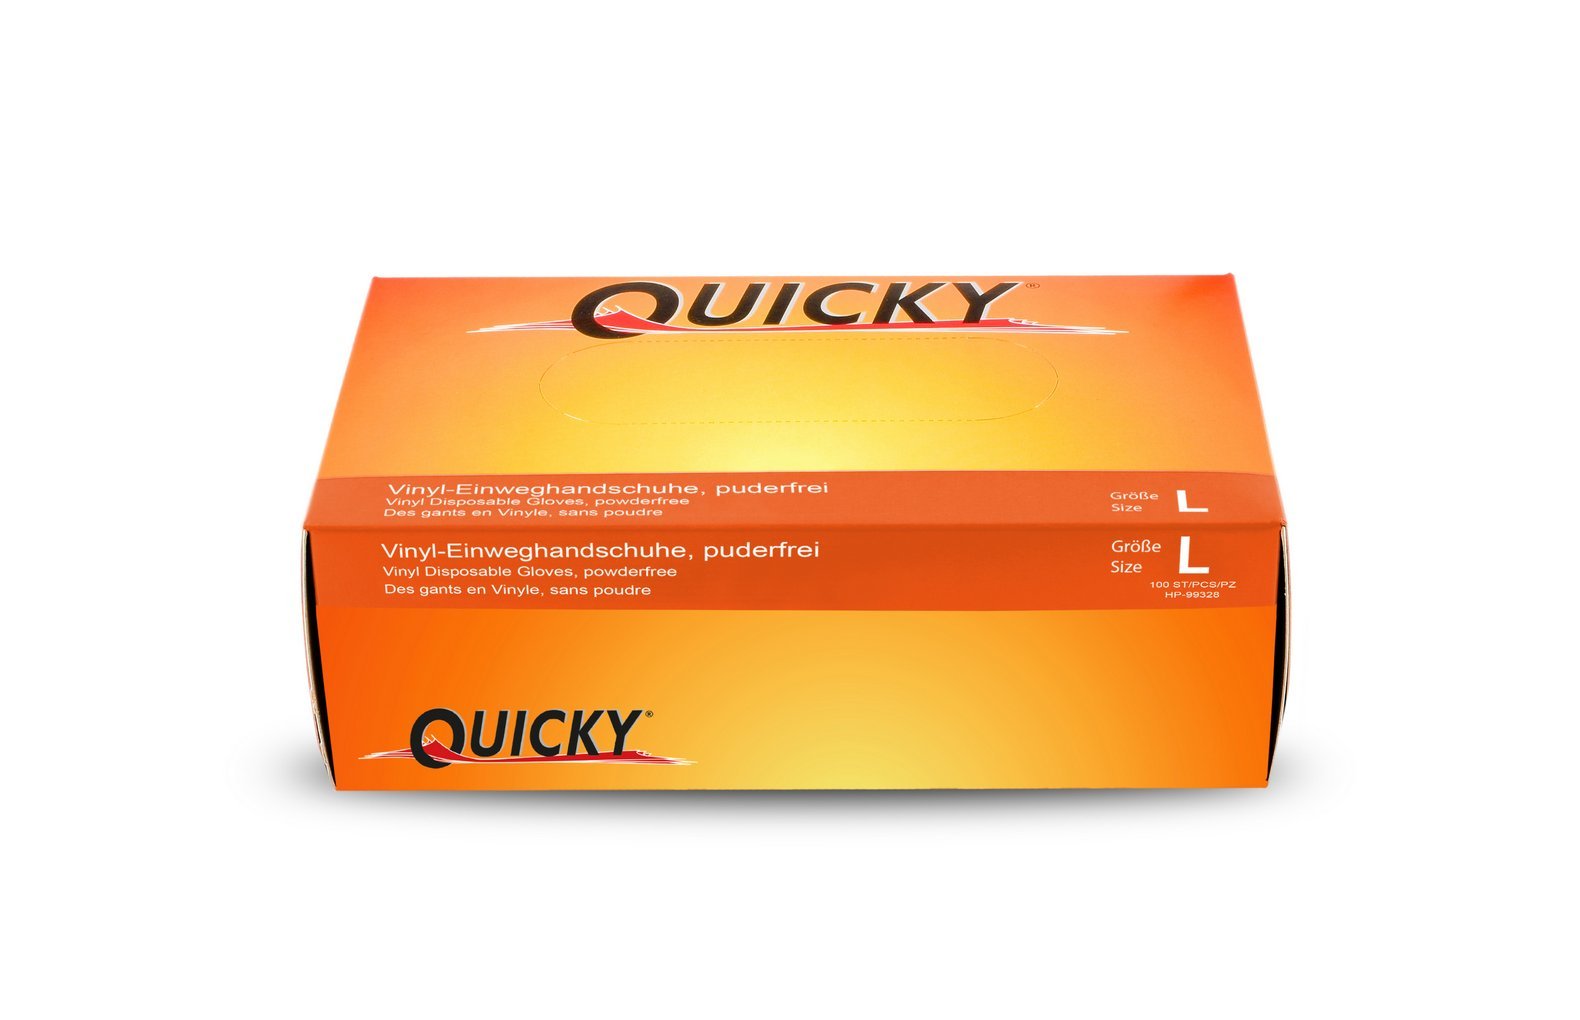 Quicky Vinyl-Einweghandschuhe, ungepudert, Größe L, weiß AQL 1.5, 10er Pack (10 x 100 Stück)